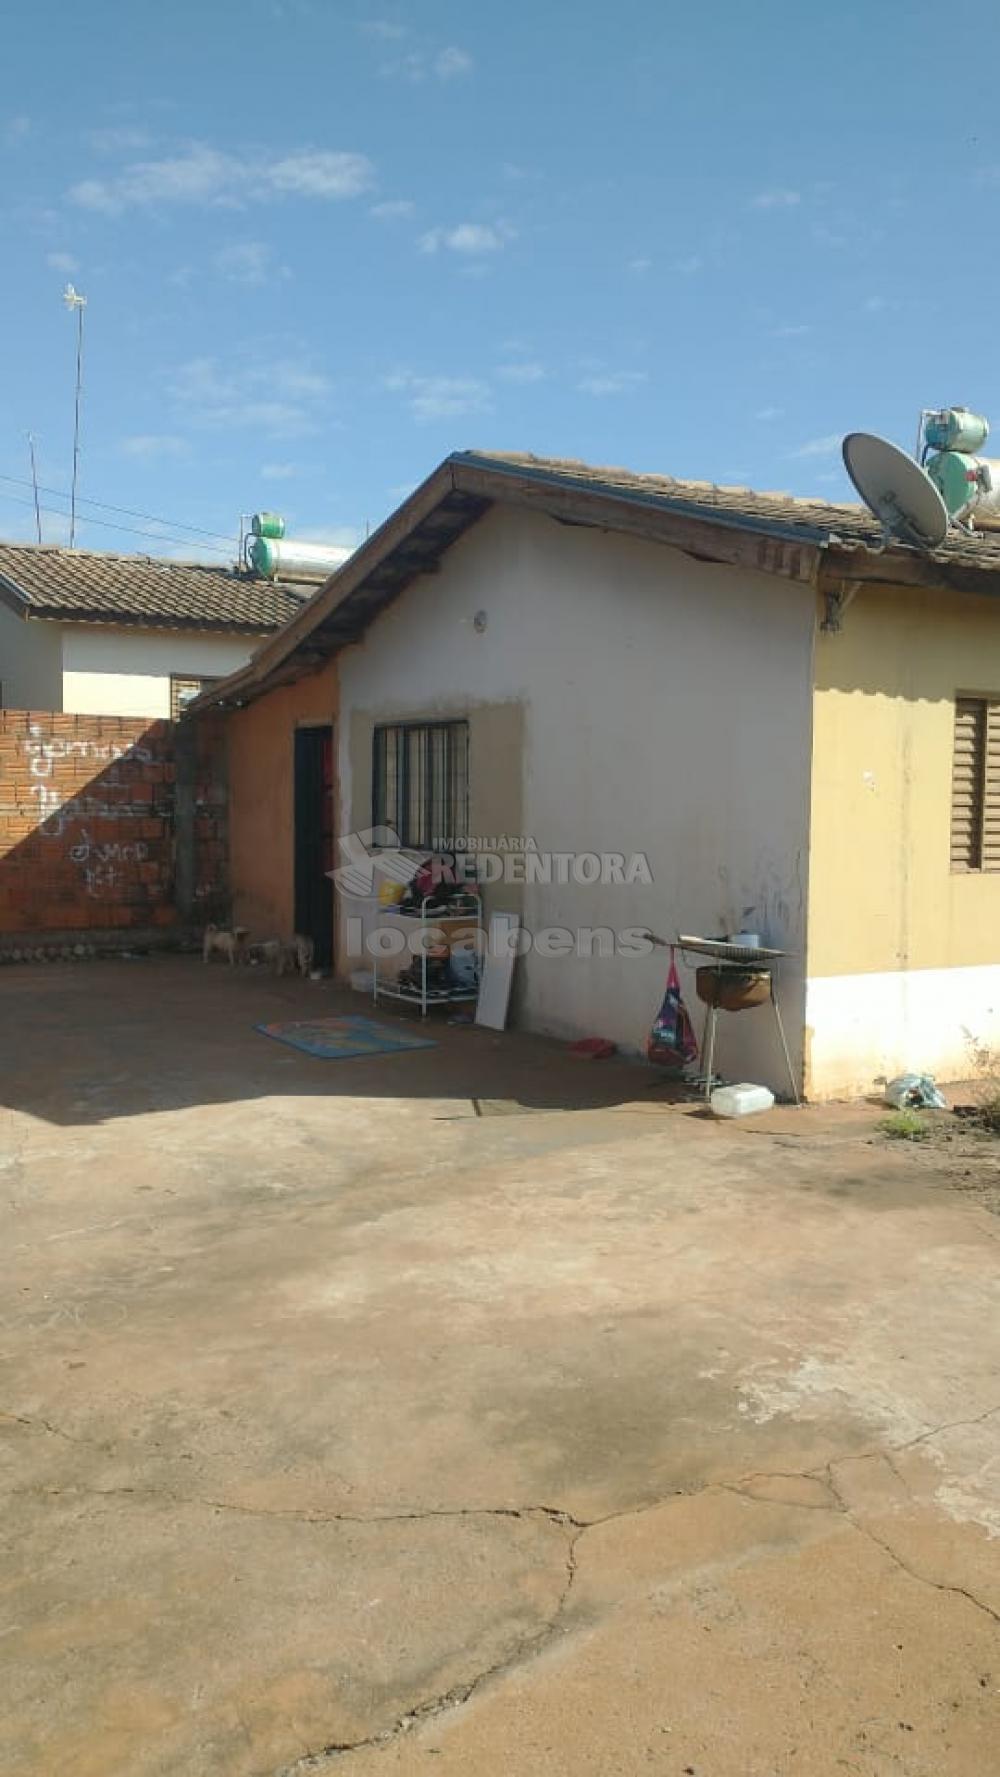 Alugar Casa / Padrão em São José do Rio Preto apenas R$ 900,00 - Foto 4